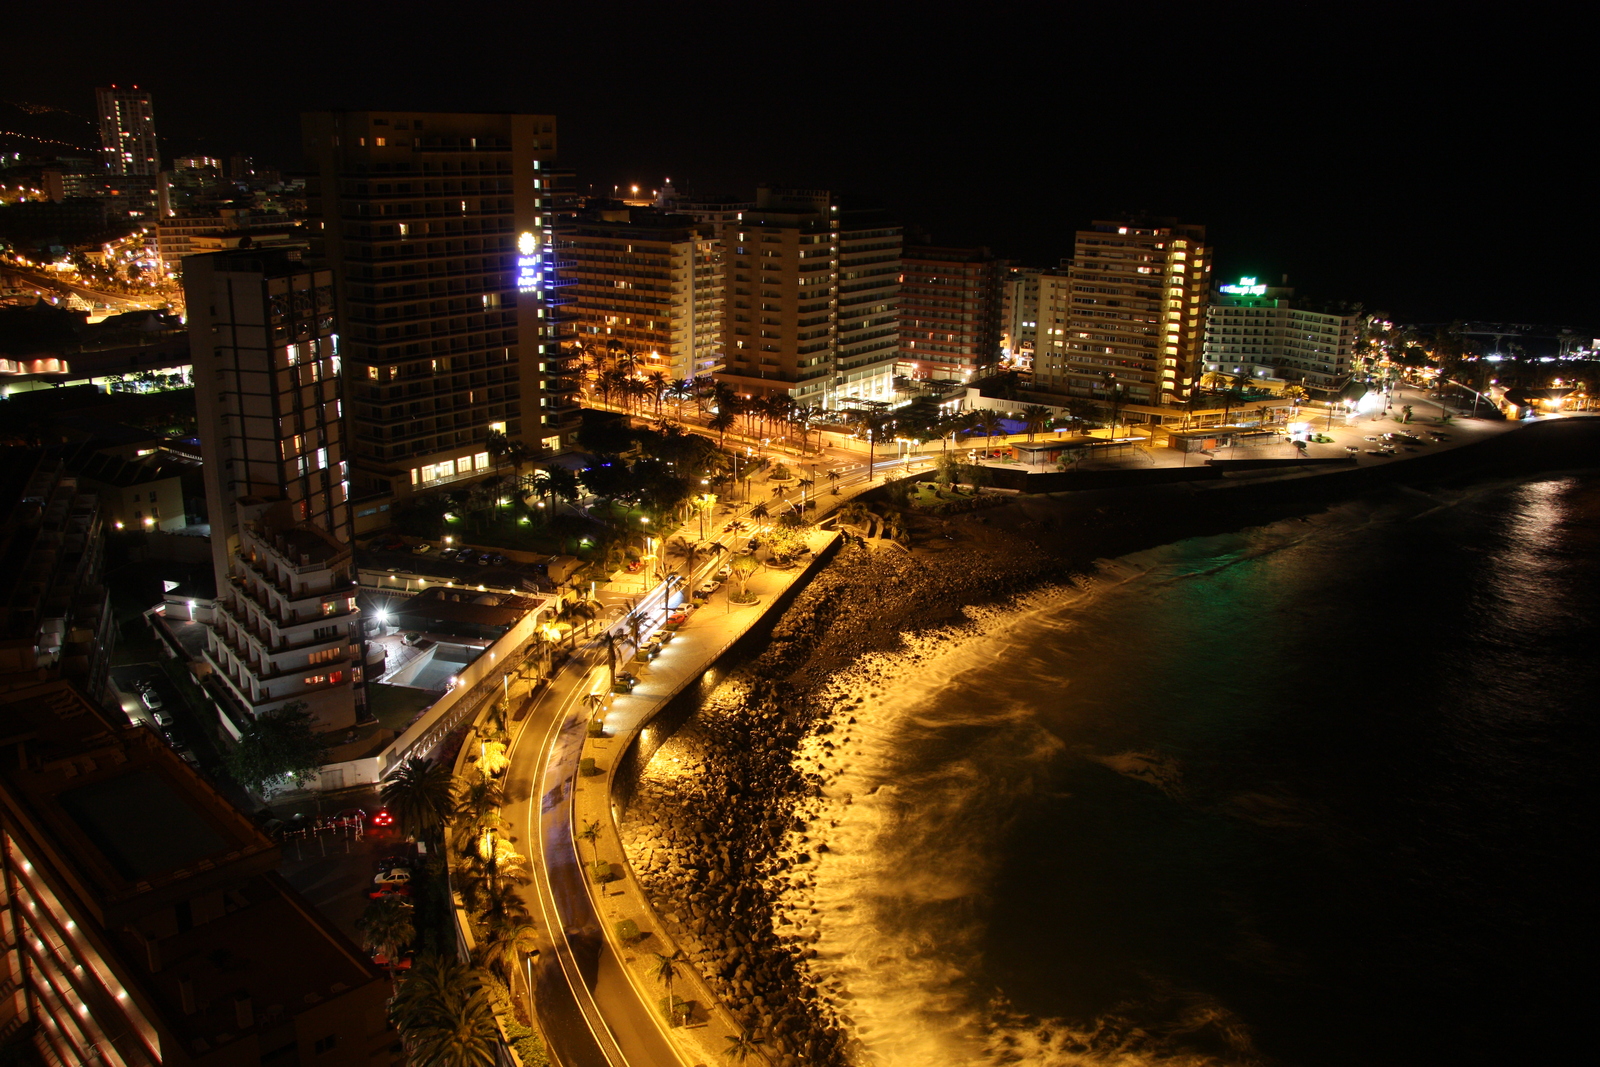 Puerto de la Cruz at night